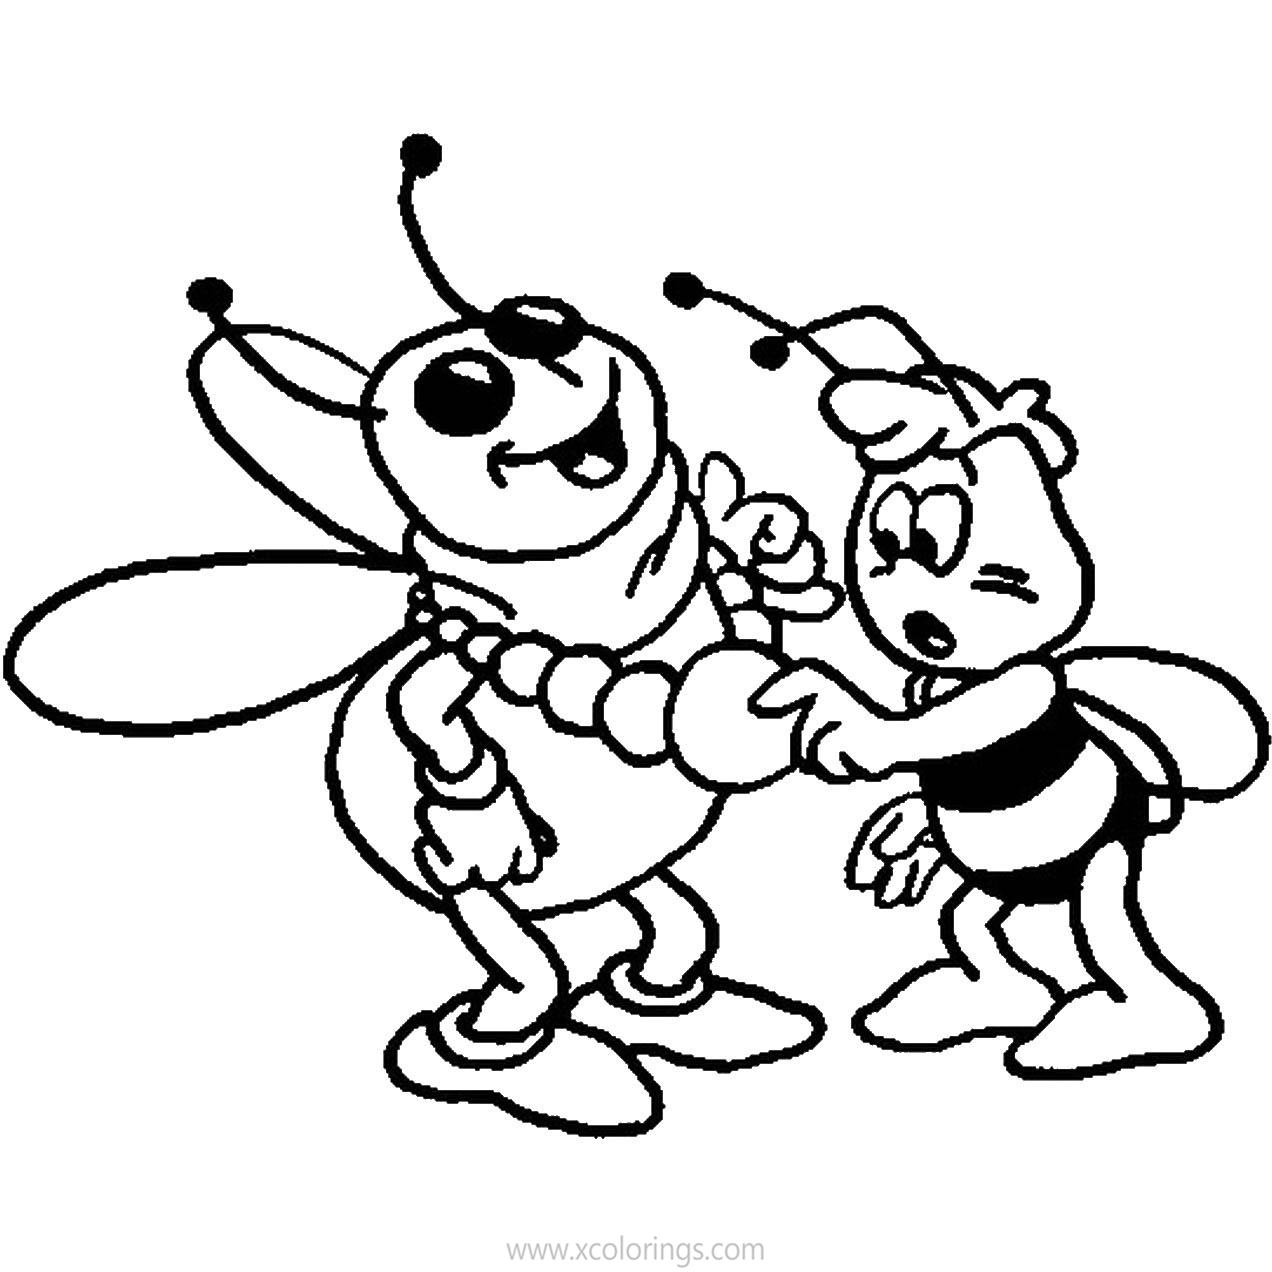 Муха цокотуха раскраска для детей. Раскраска пчёлка для детей. Пчела раскраска. Пчела раскраска для детей. Муха цокатухараскраска.